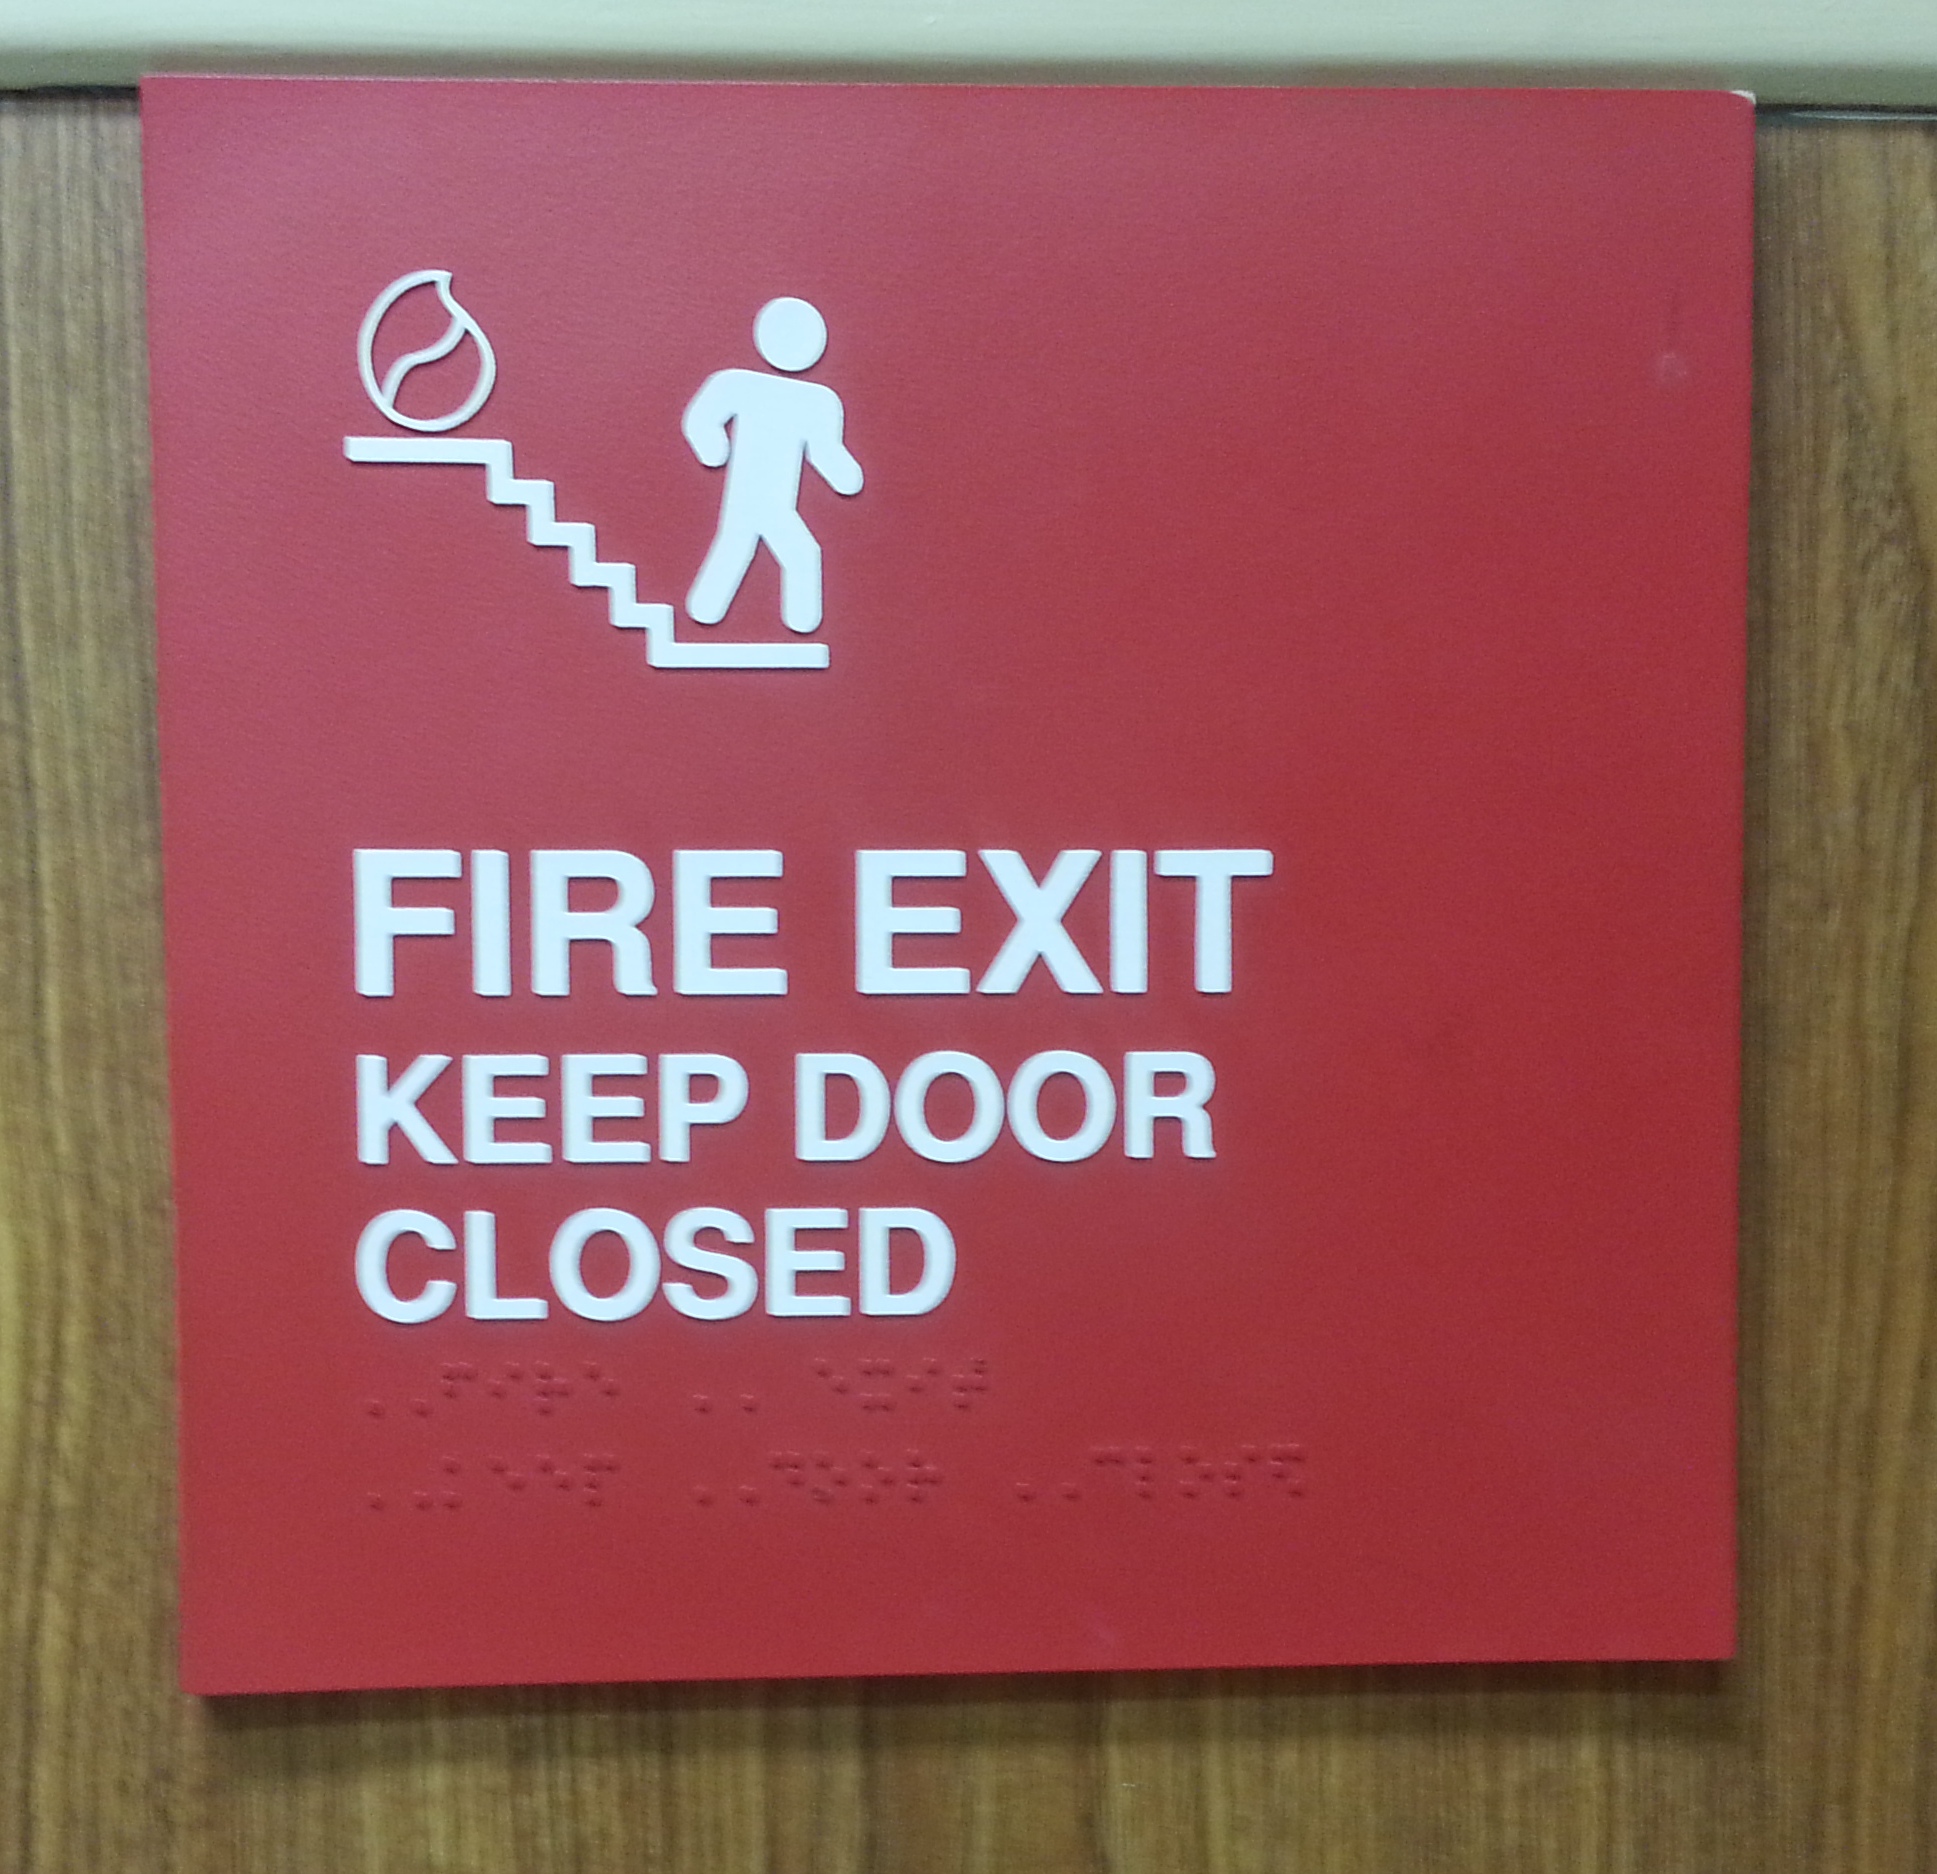 <---
FIRE EXIT / KEEP DOOR CLOSED